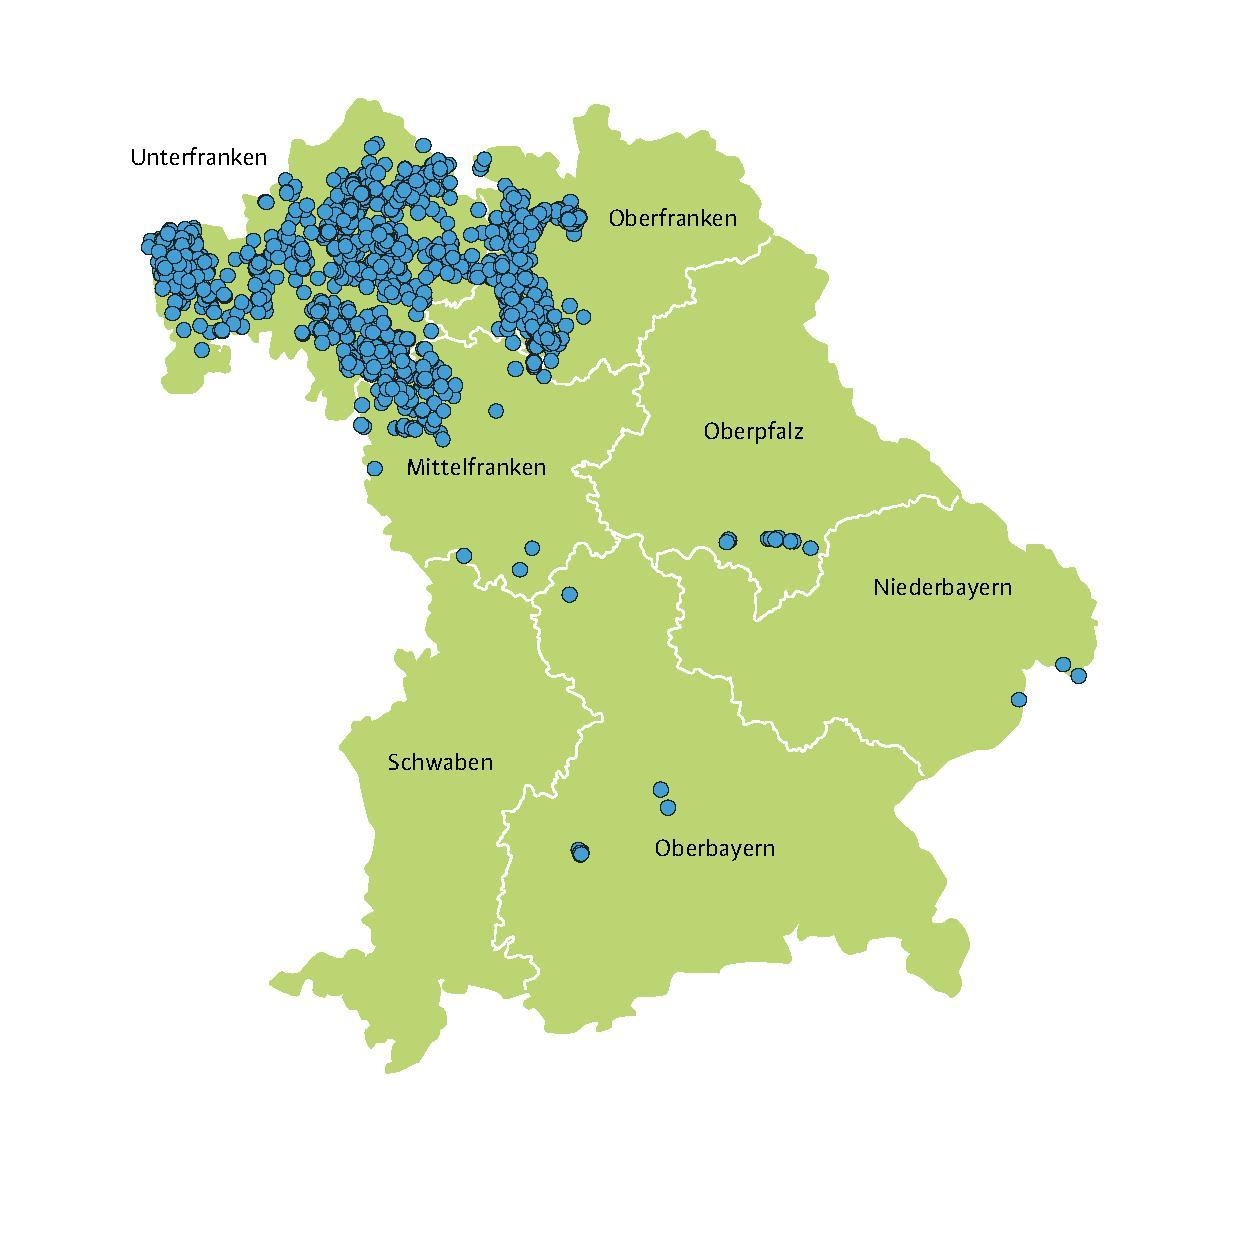  Dank aufmerksamer Bürgerinnen und Bürgern, die ihre Hirschkäfer-Beobachtungen gemeldet haben, entstand 2022 ein hervorragendes Verbreitungsbild des Hirschkäfervorkommens in Bayern.